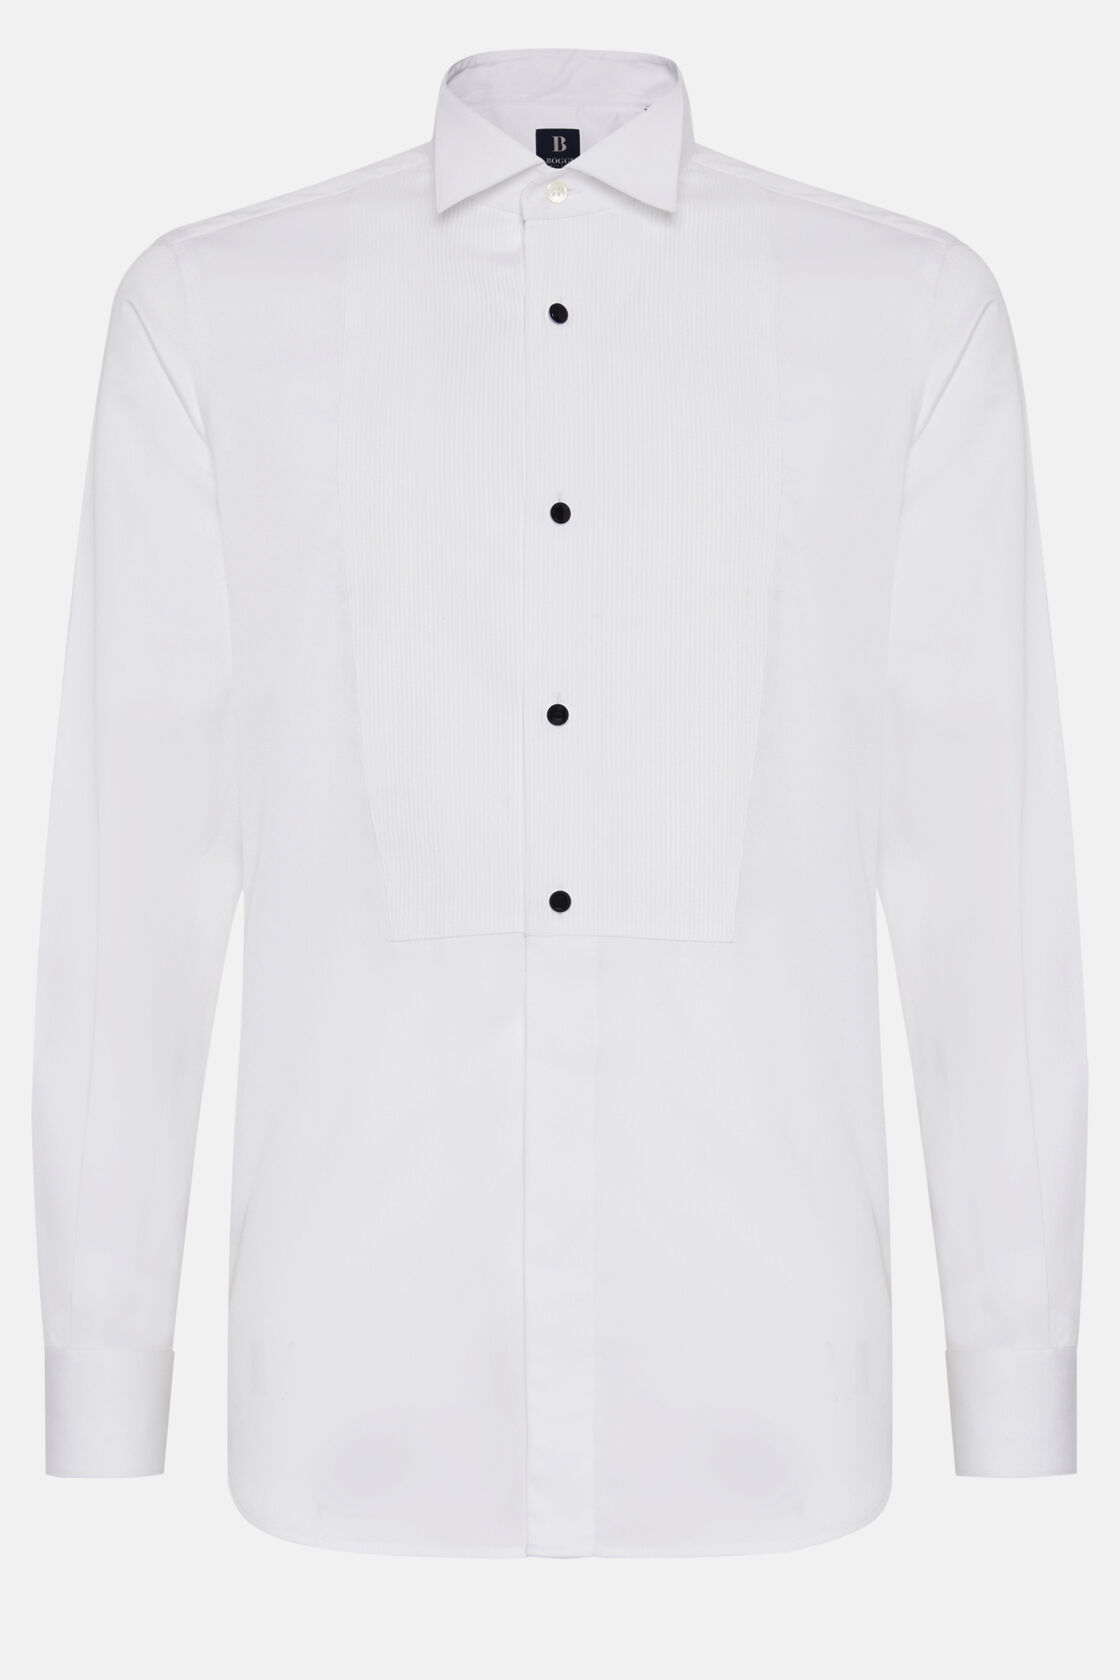 Slim Fit White Cotton Shirt, White, hi-res